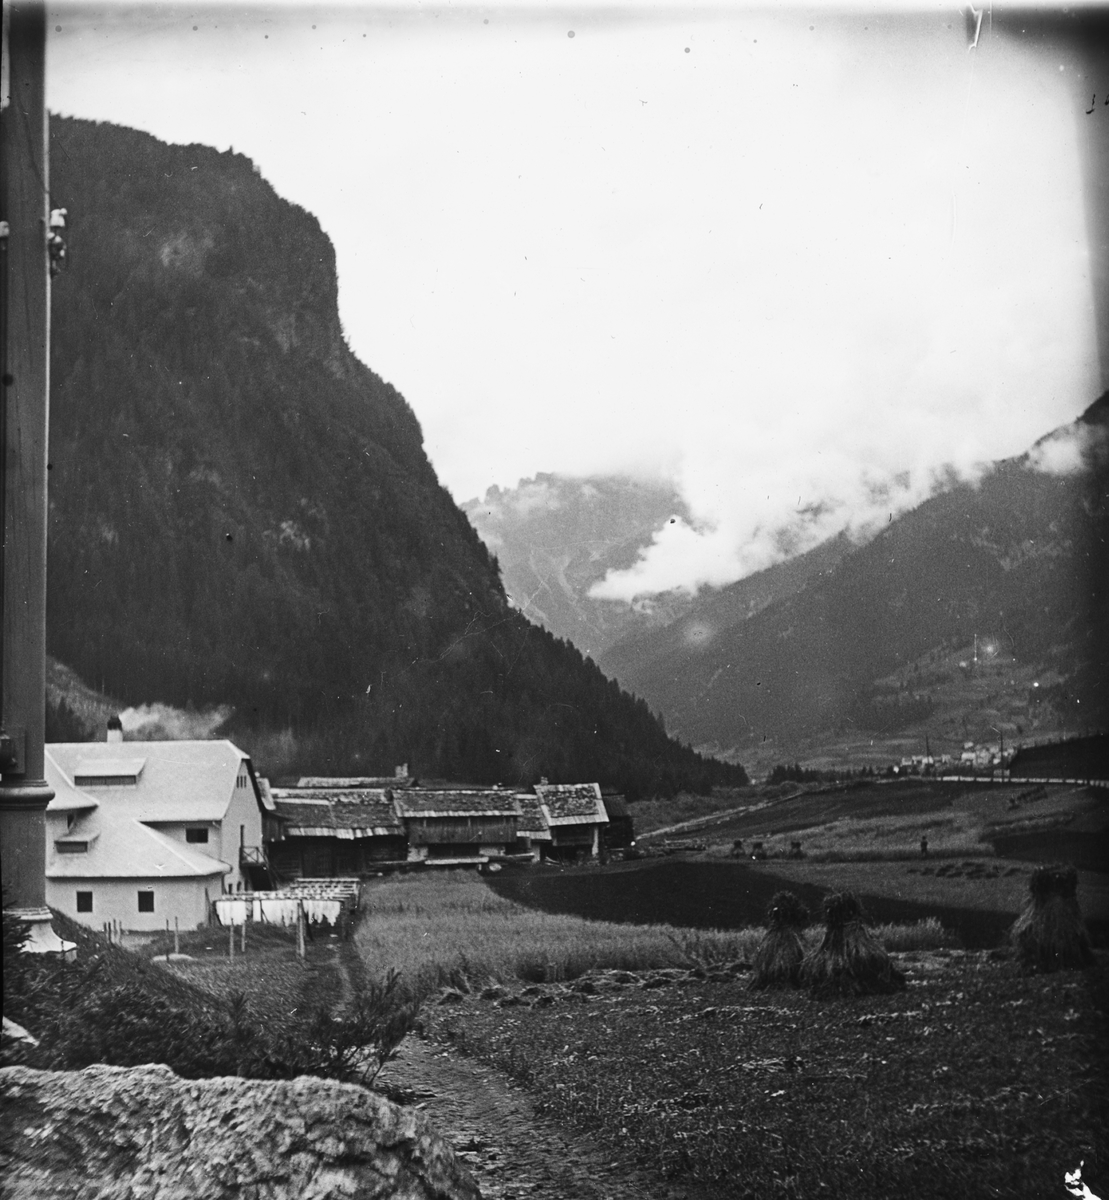 Skioptikonbild med motiv från Trento, Sydtyrolen.
Bilden har förvarats i kartong märkt: Resan 1909. Trient 7. N:20.